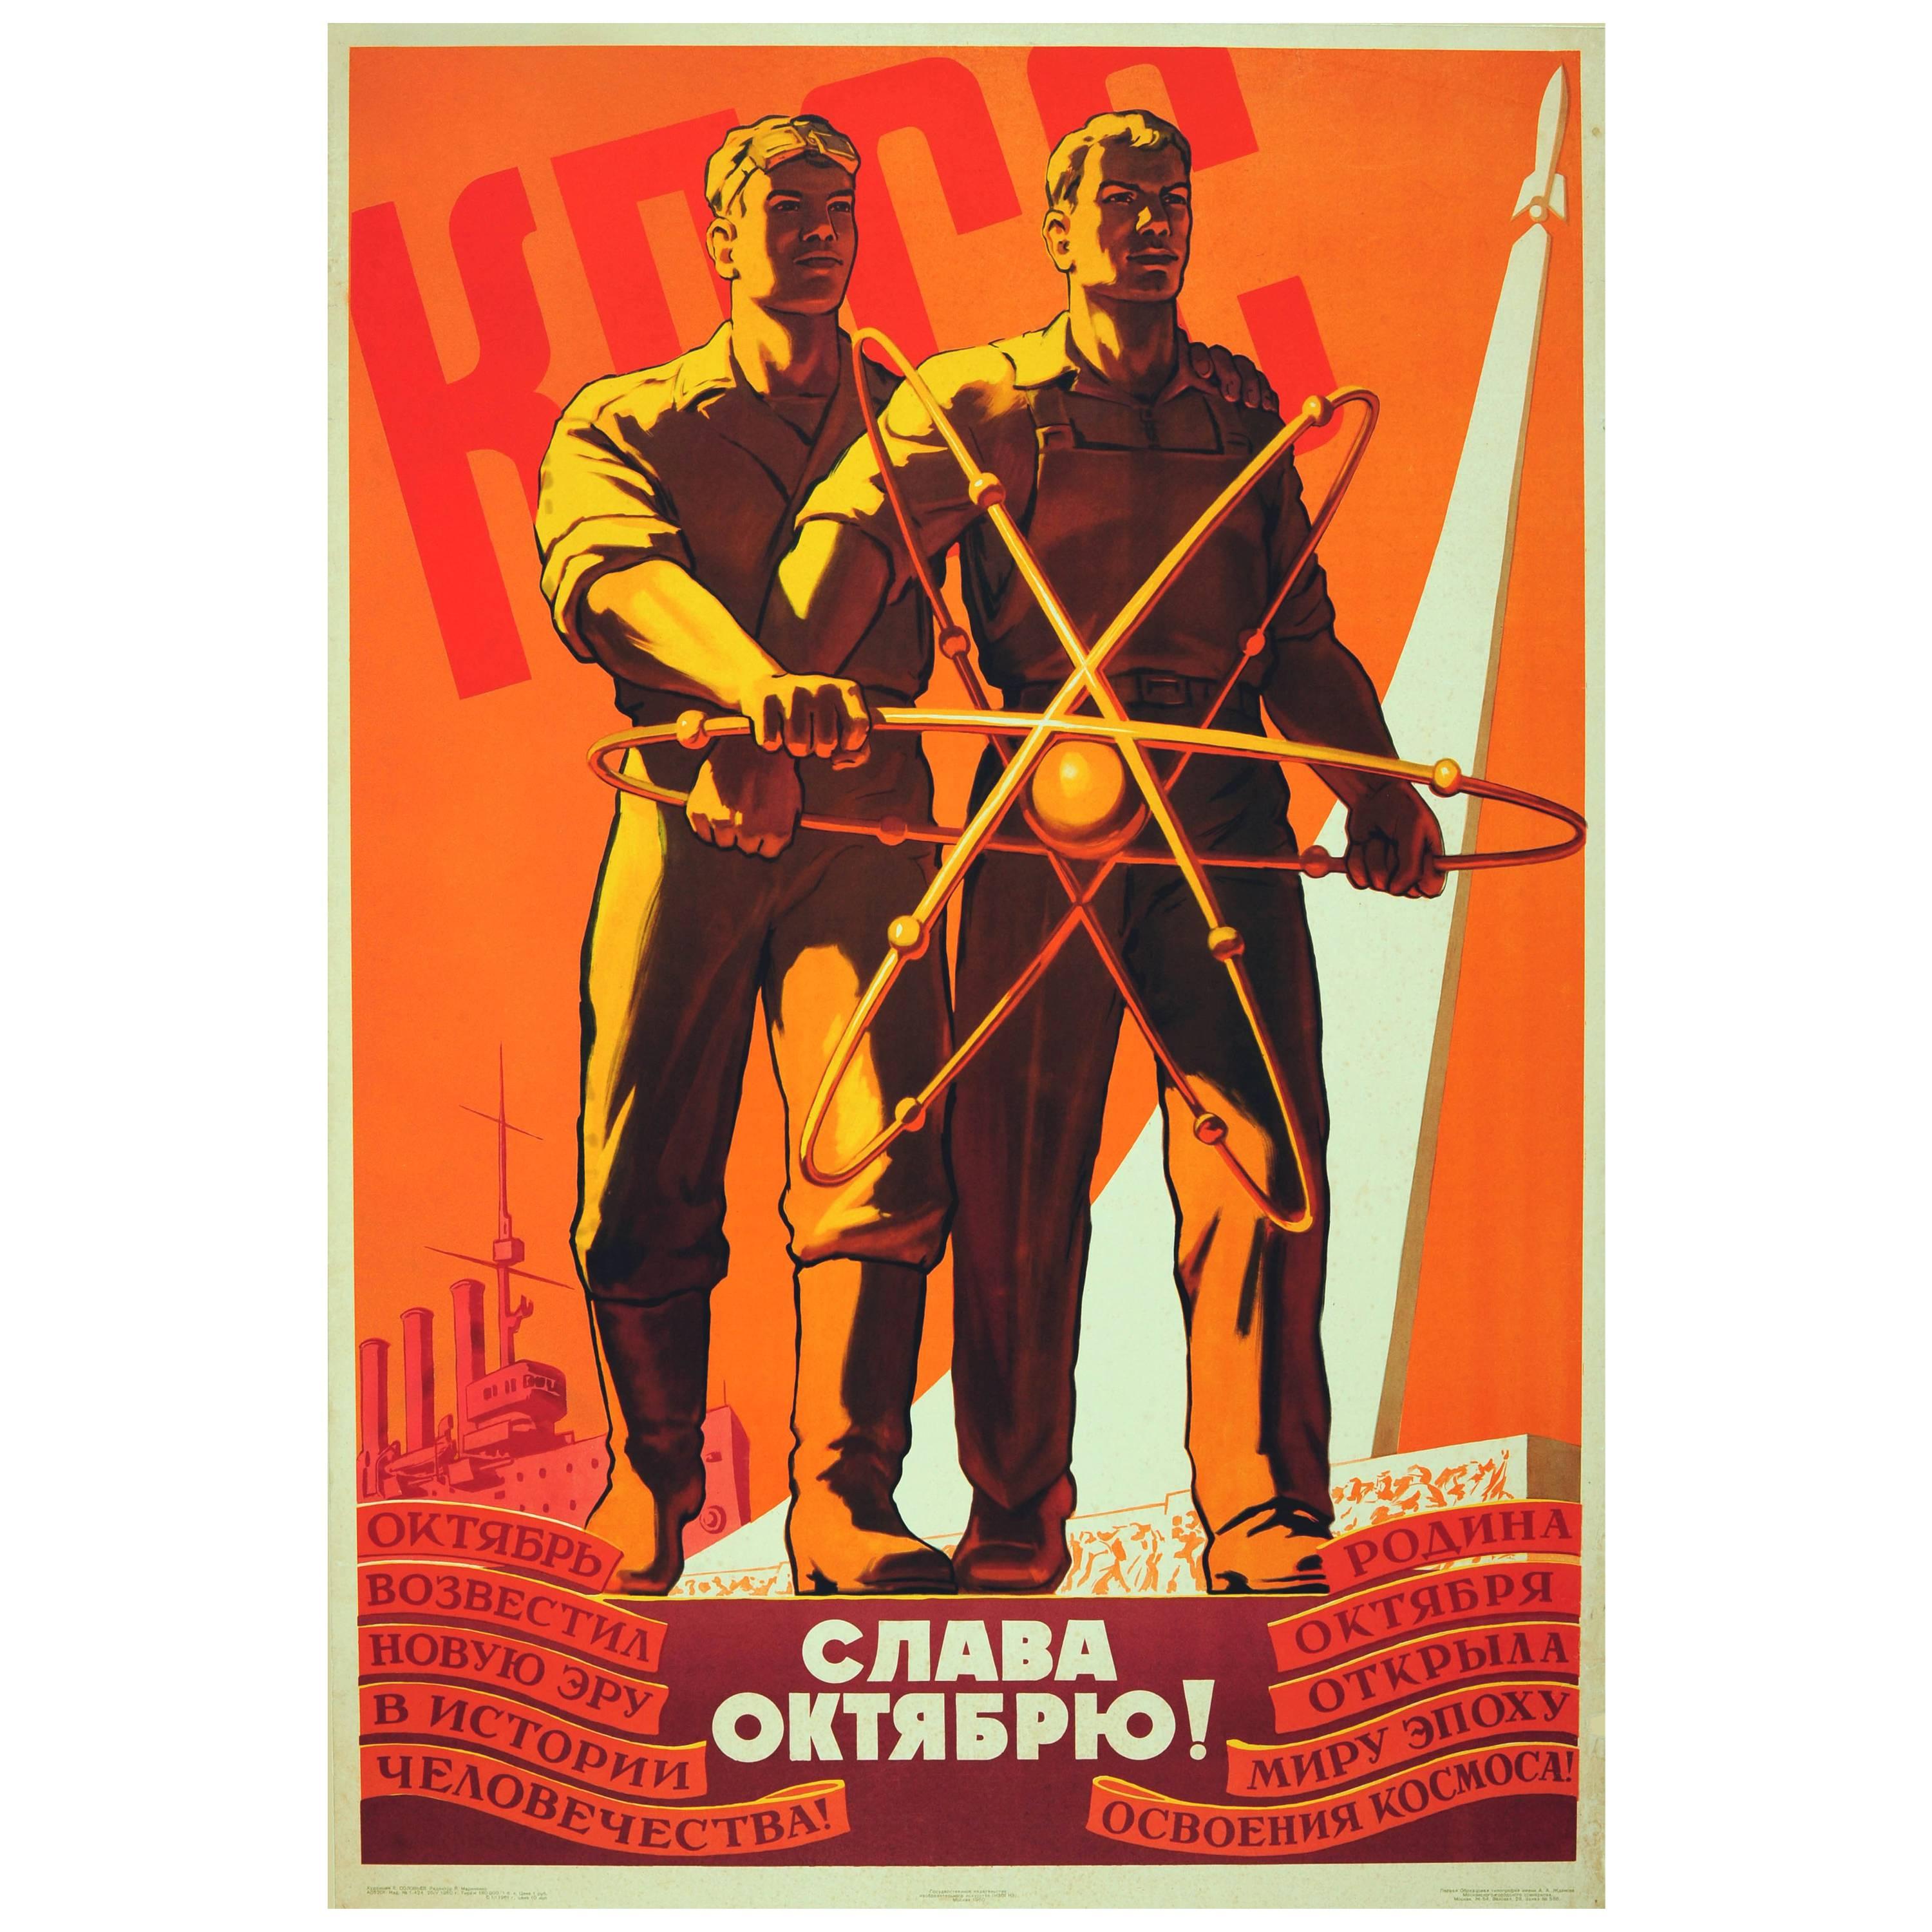 Original Vintage Soviet Propaganda Poster, USSR Glory to the October Revolution